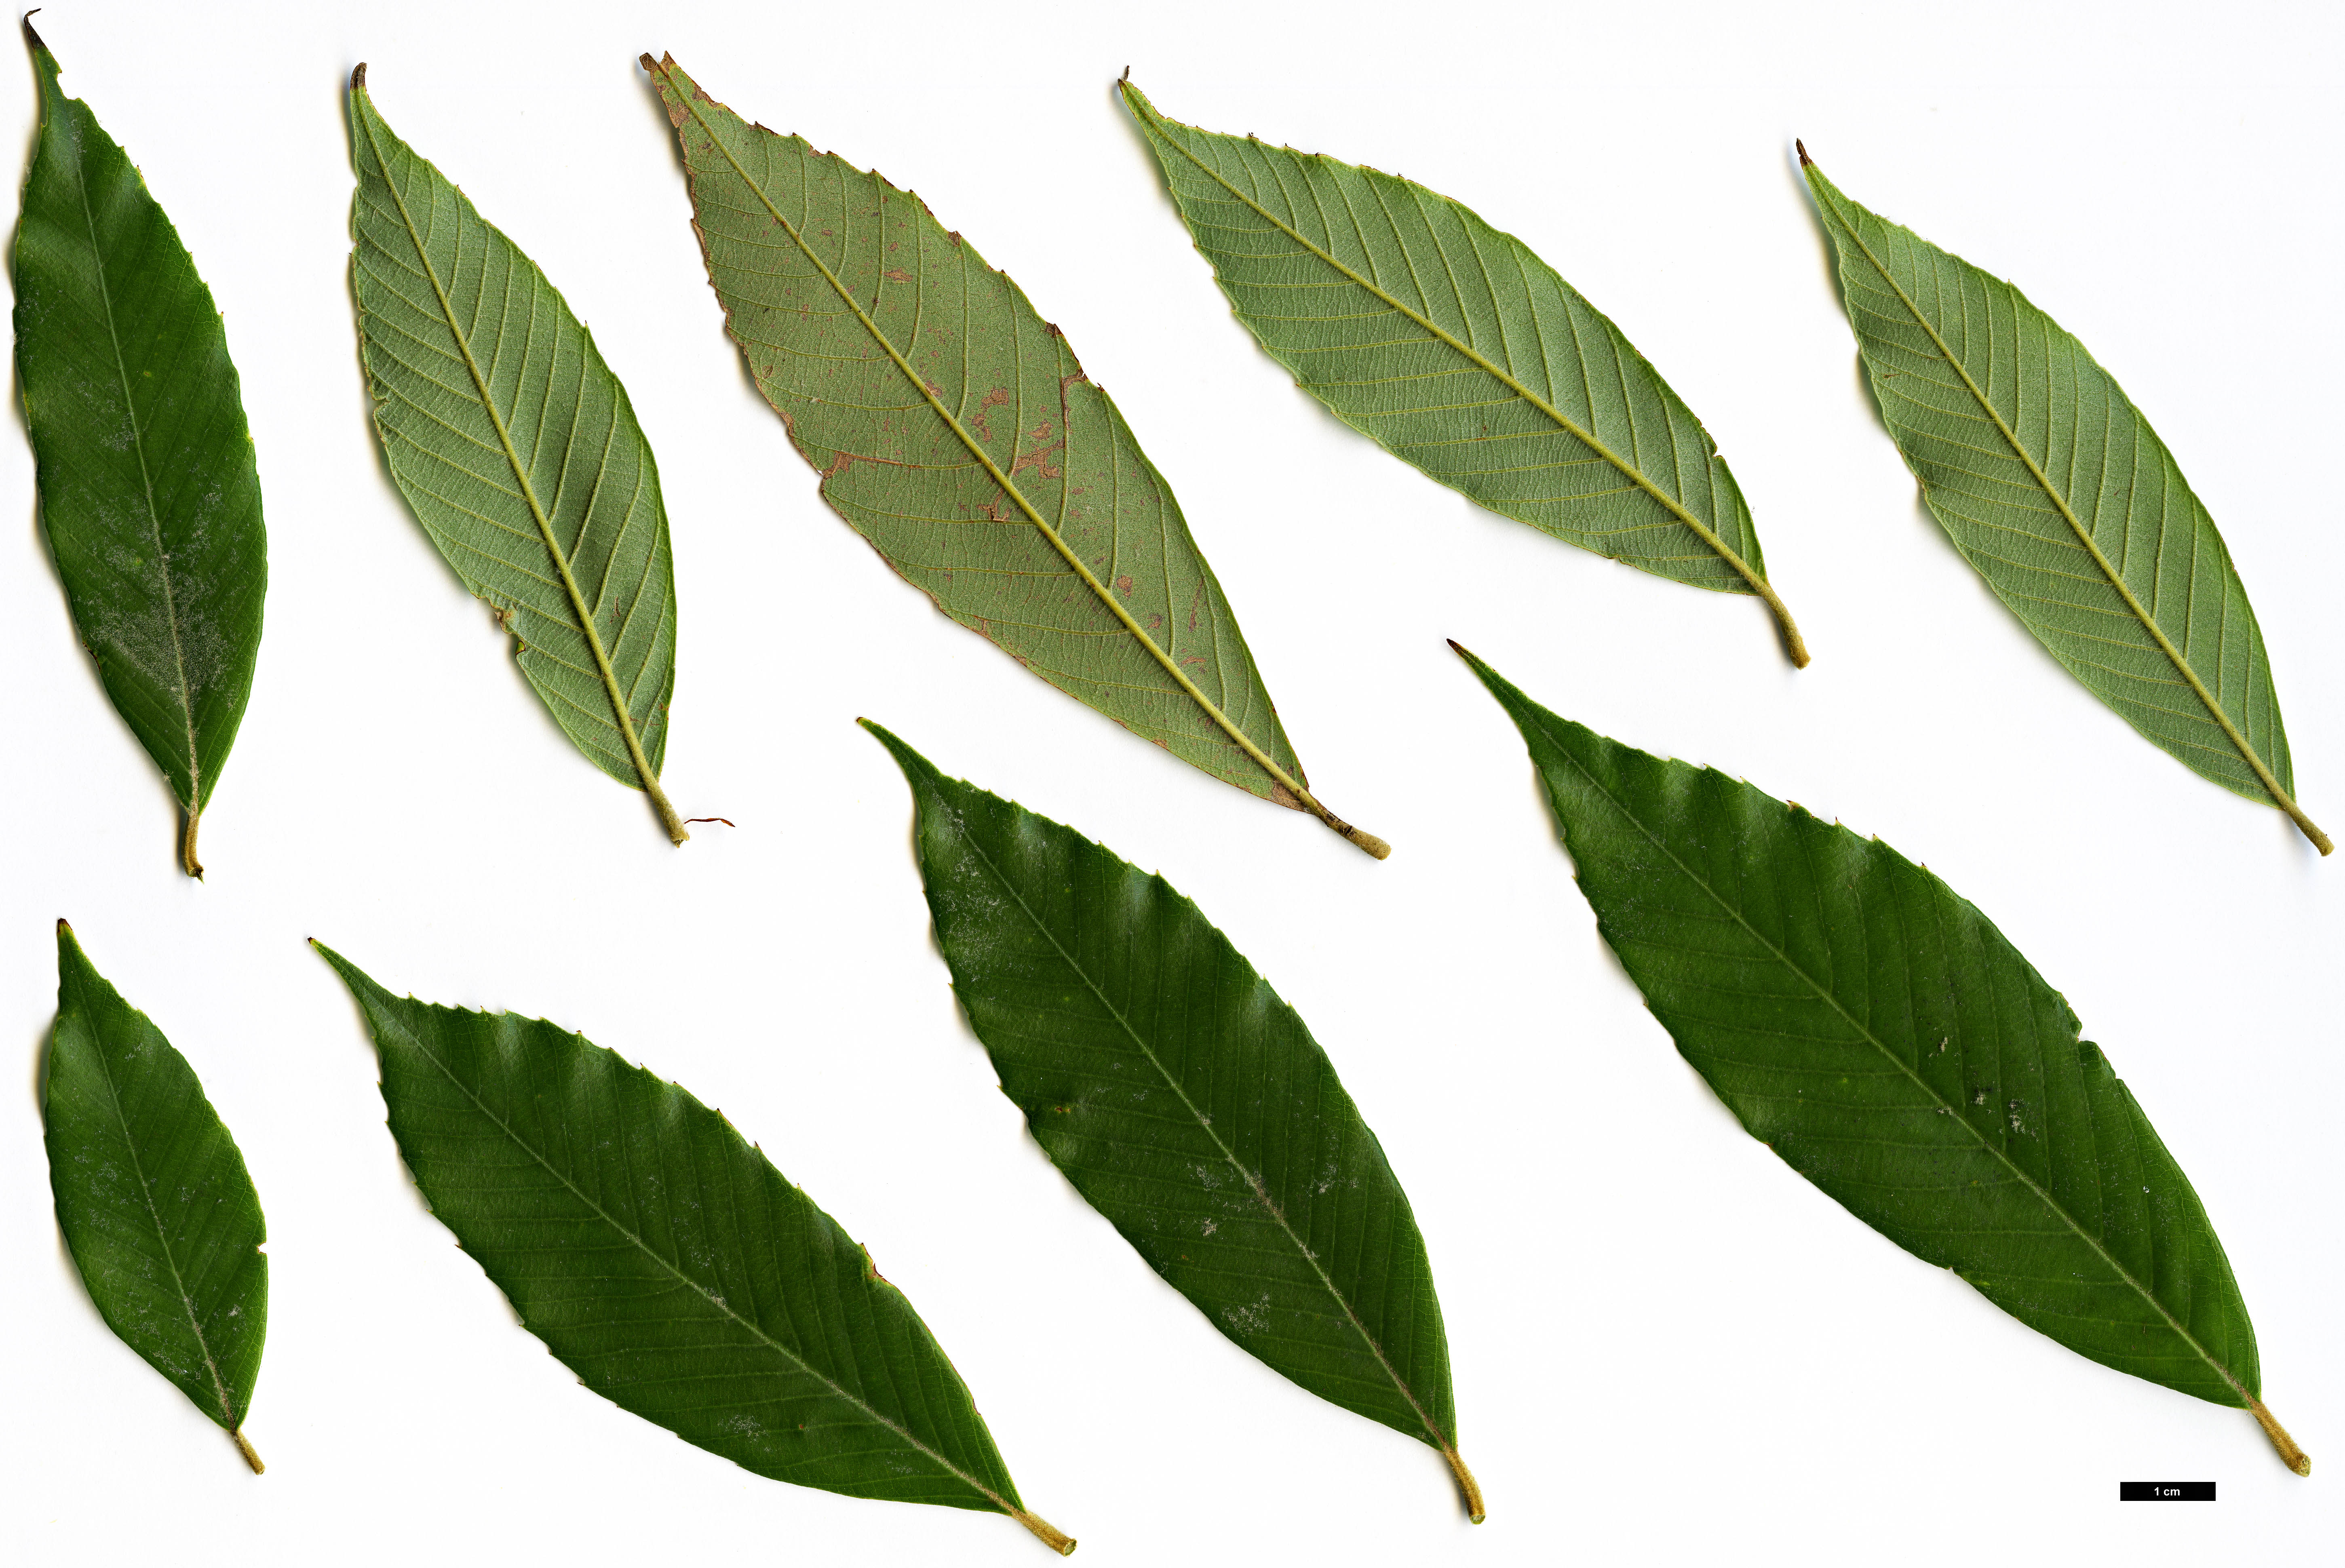 High resolution image: Family: Fagaceae - Genus: Quercus - Taxon: lobbii